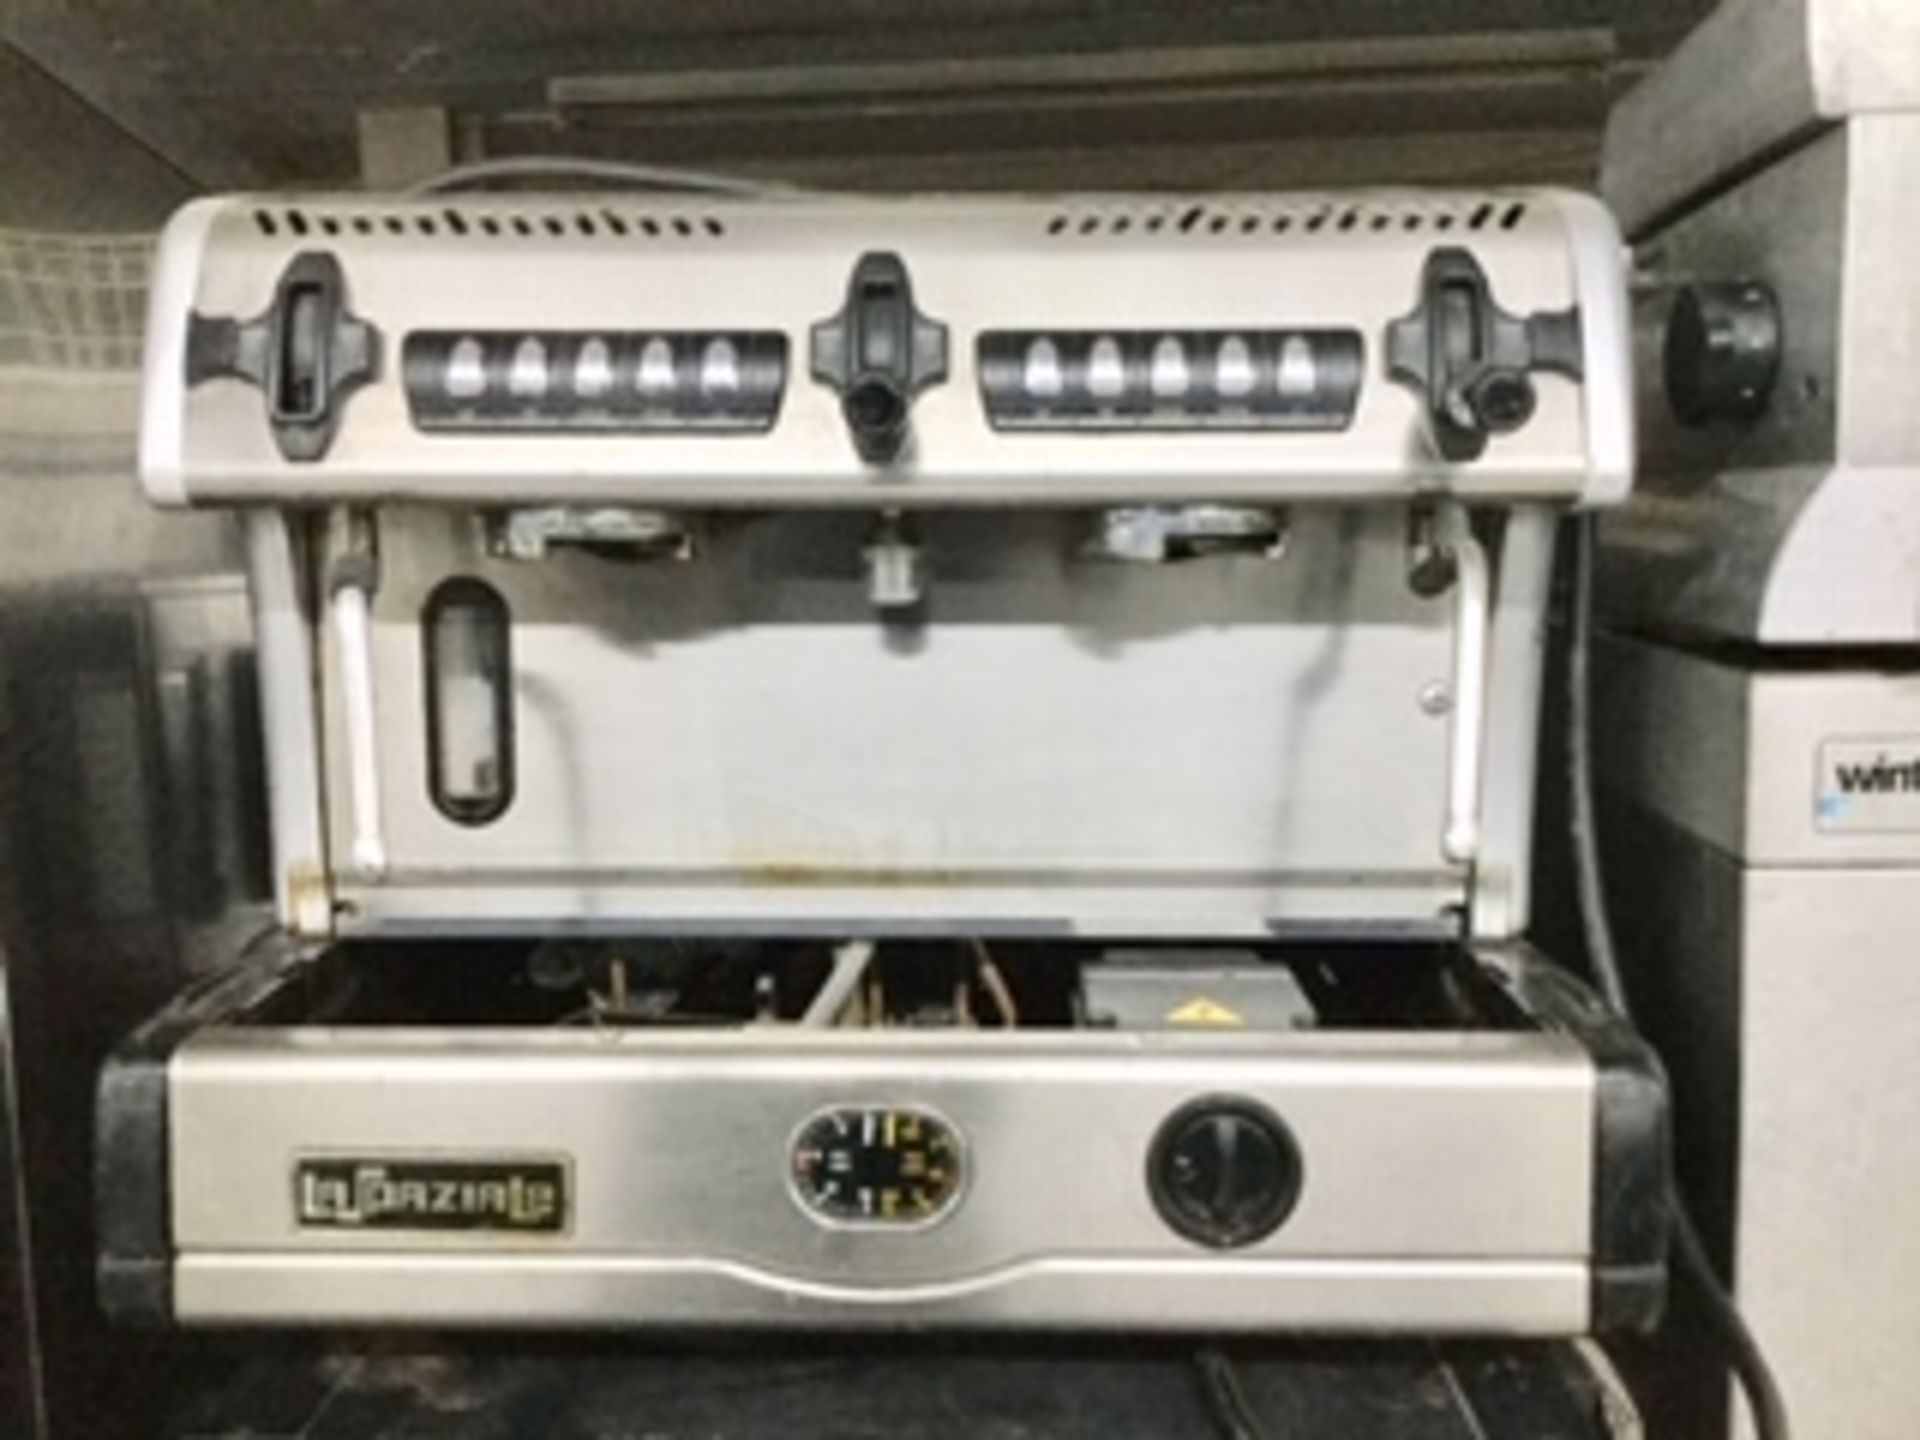 La Spaziale Two Group Espresso / Cappuccino Coffee Machine missing drip tray – NO VAT